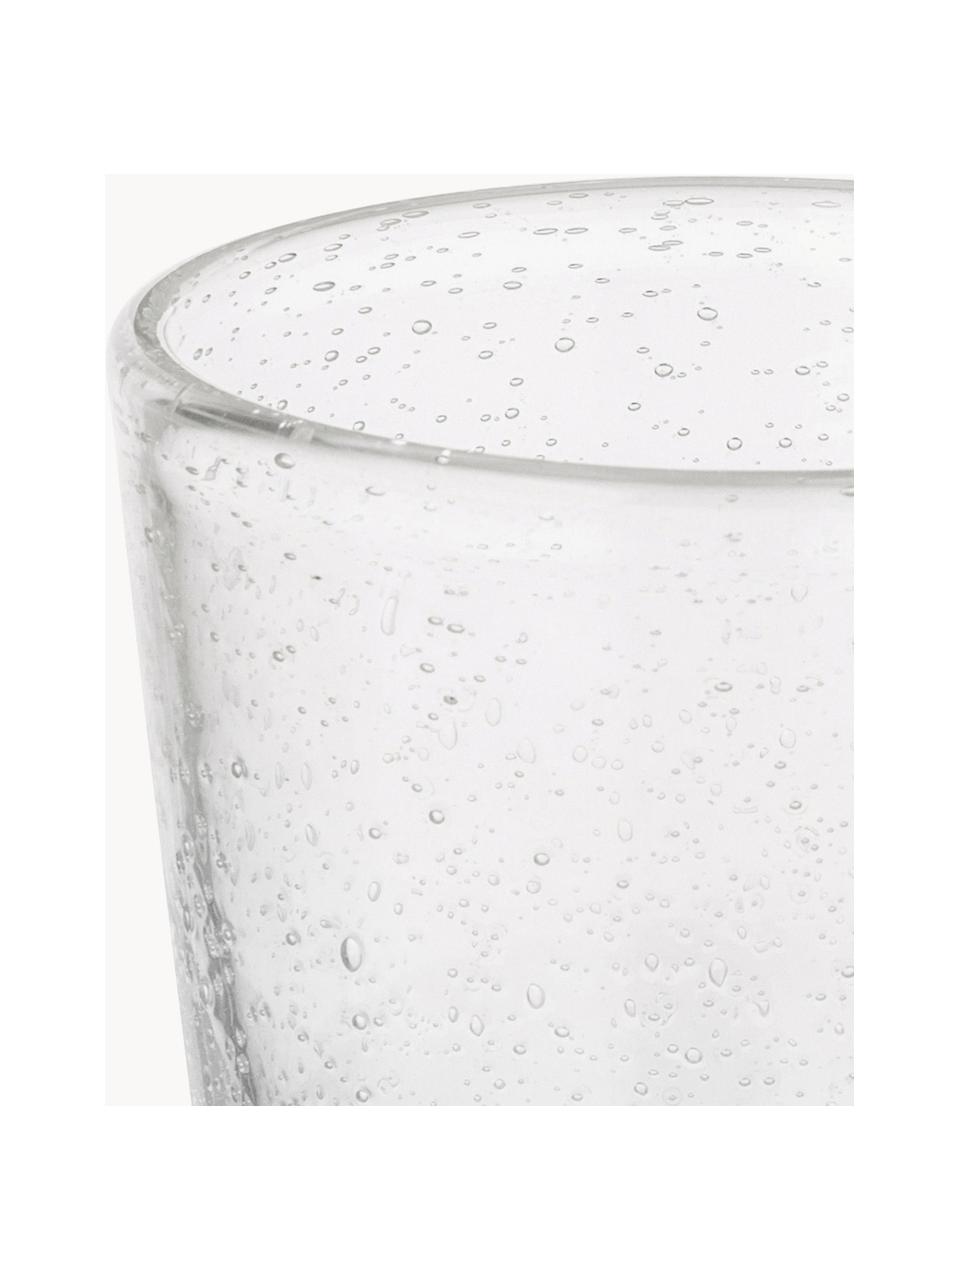 Mundgeblasene Wassergläser Bubble mit dekorativen Luftbläschen, 4 Stück, Glas, mundgeblasen, Transparent, Ø 8 x H 10 cm, 250 ml